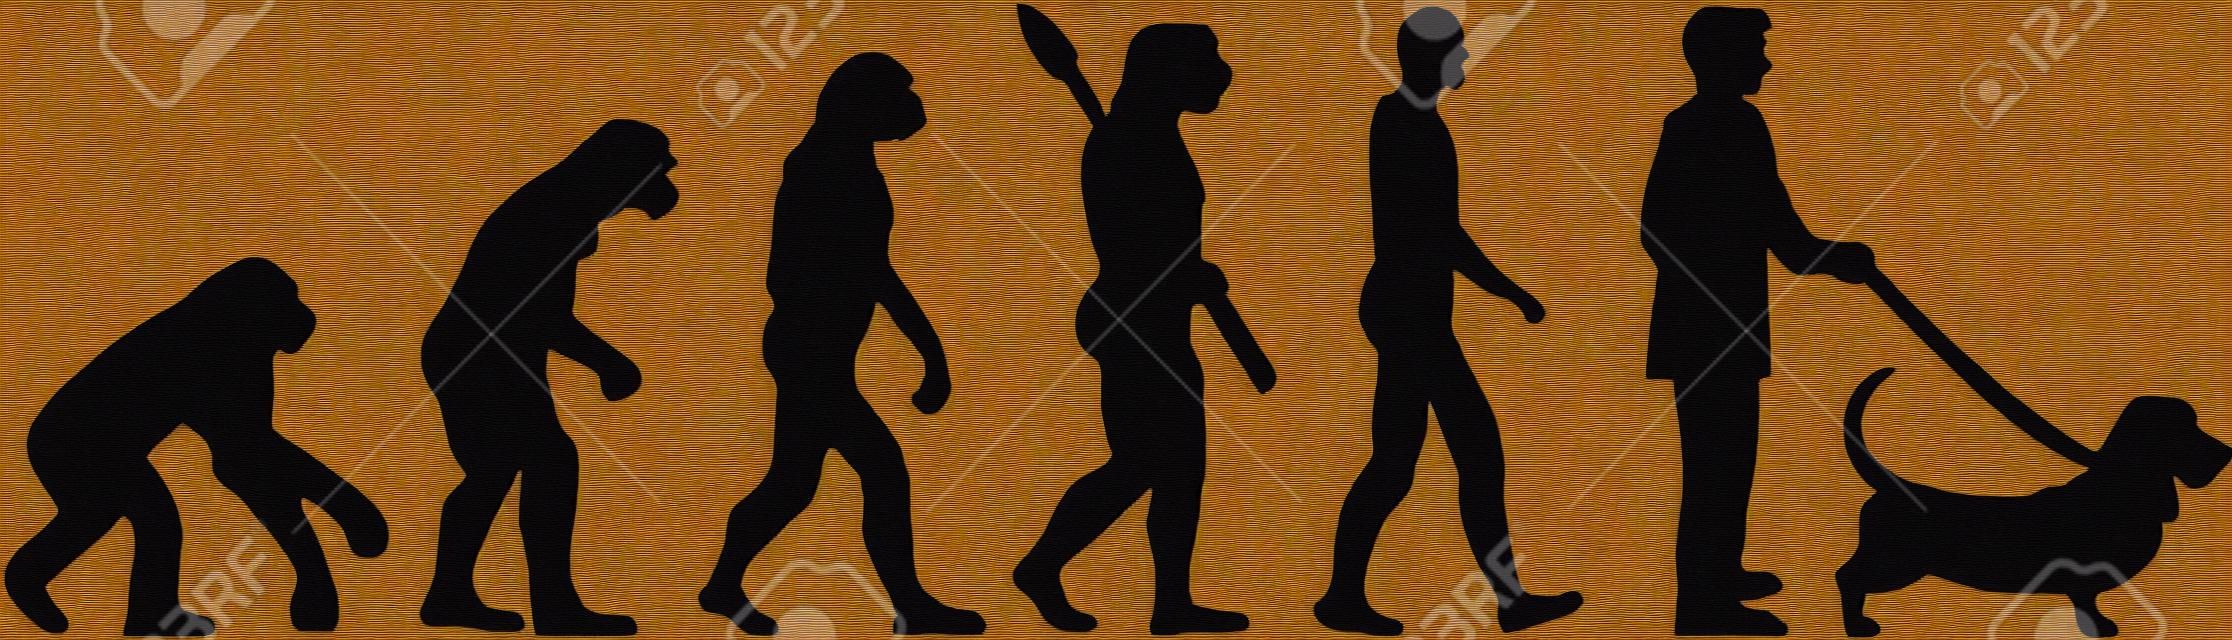 Evoluzione di basset hound con l'illustrazione della siluetta.